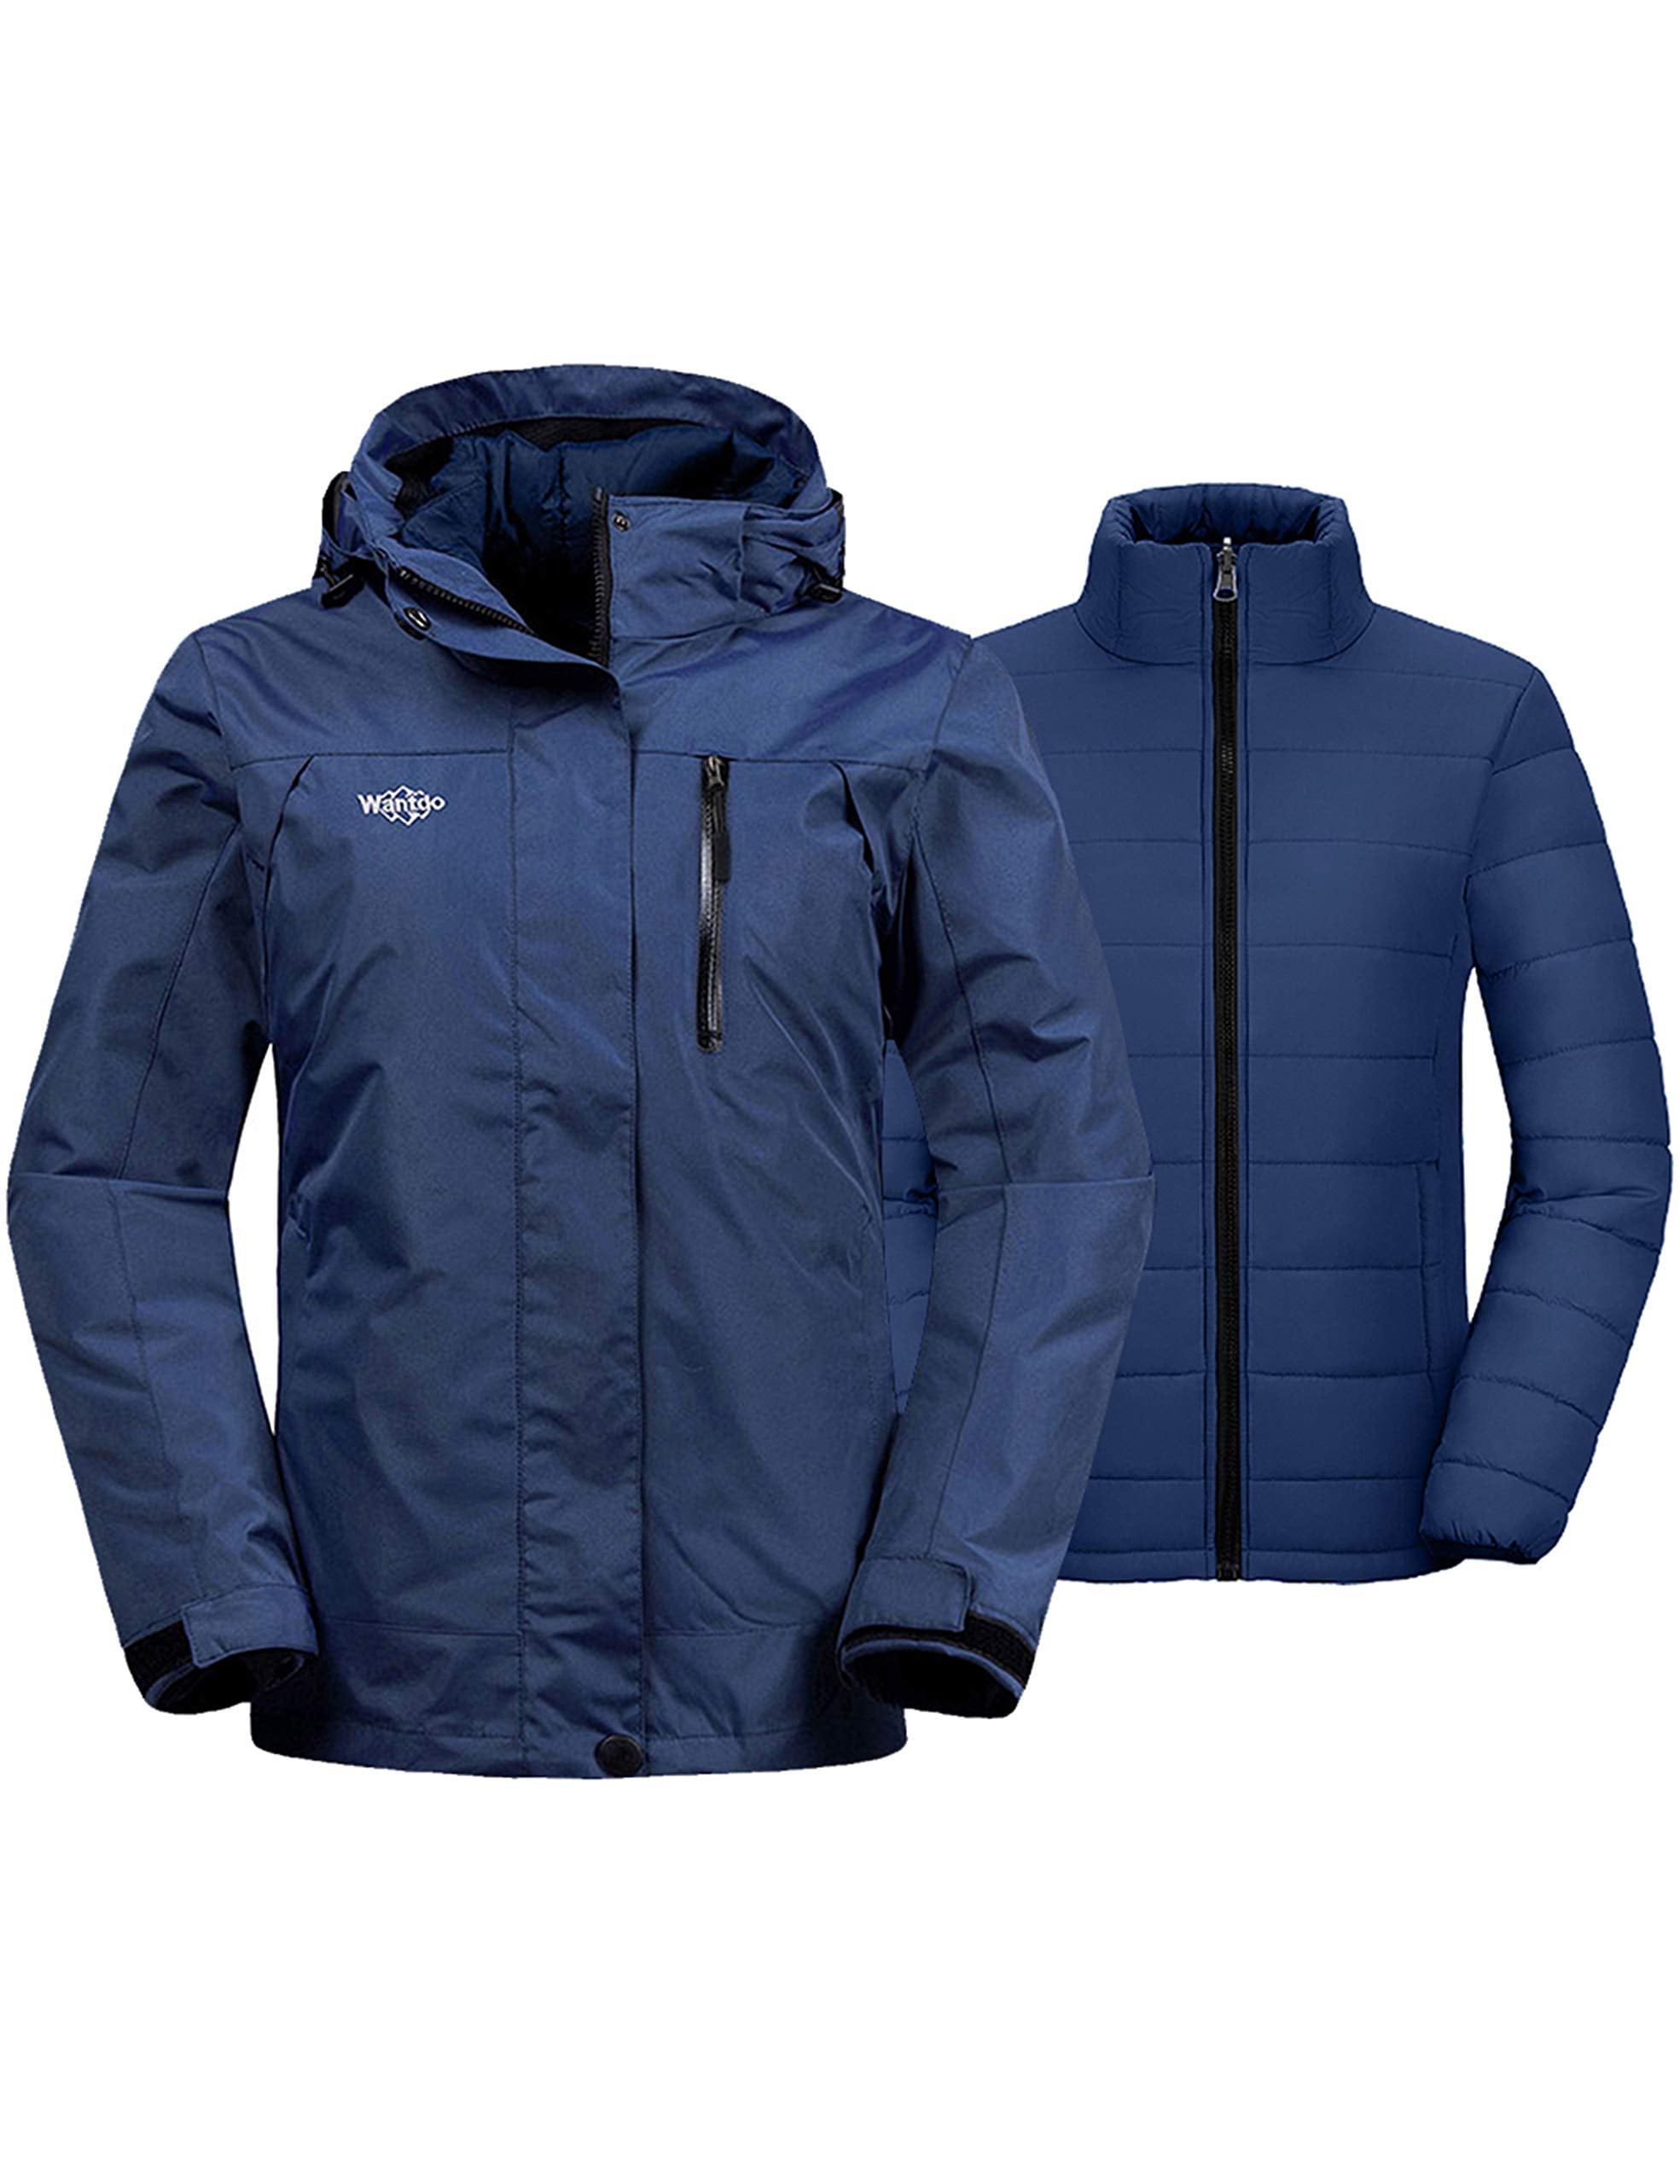 Waterproof 3-in-1 Jacket Insulated Coat Windbreaker Outdoor Fashion Women Ski Jacket Winter Fleece 